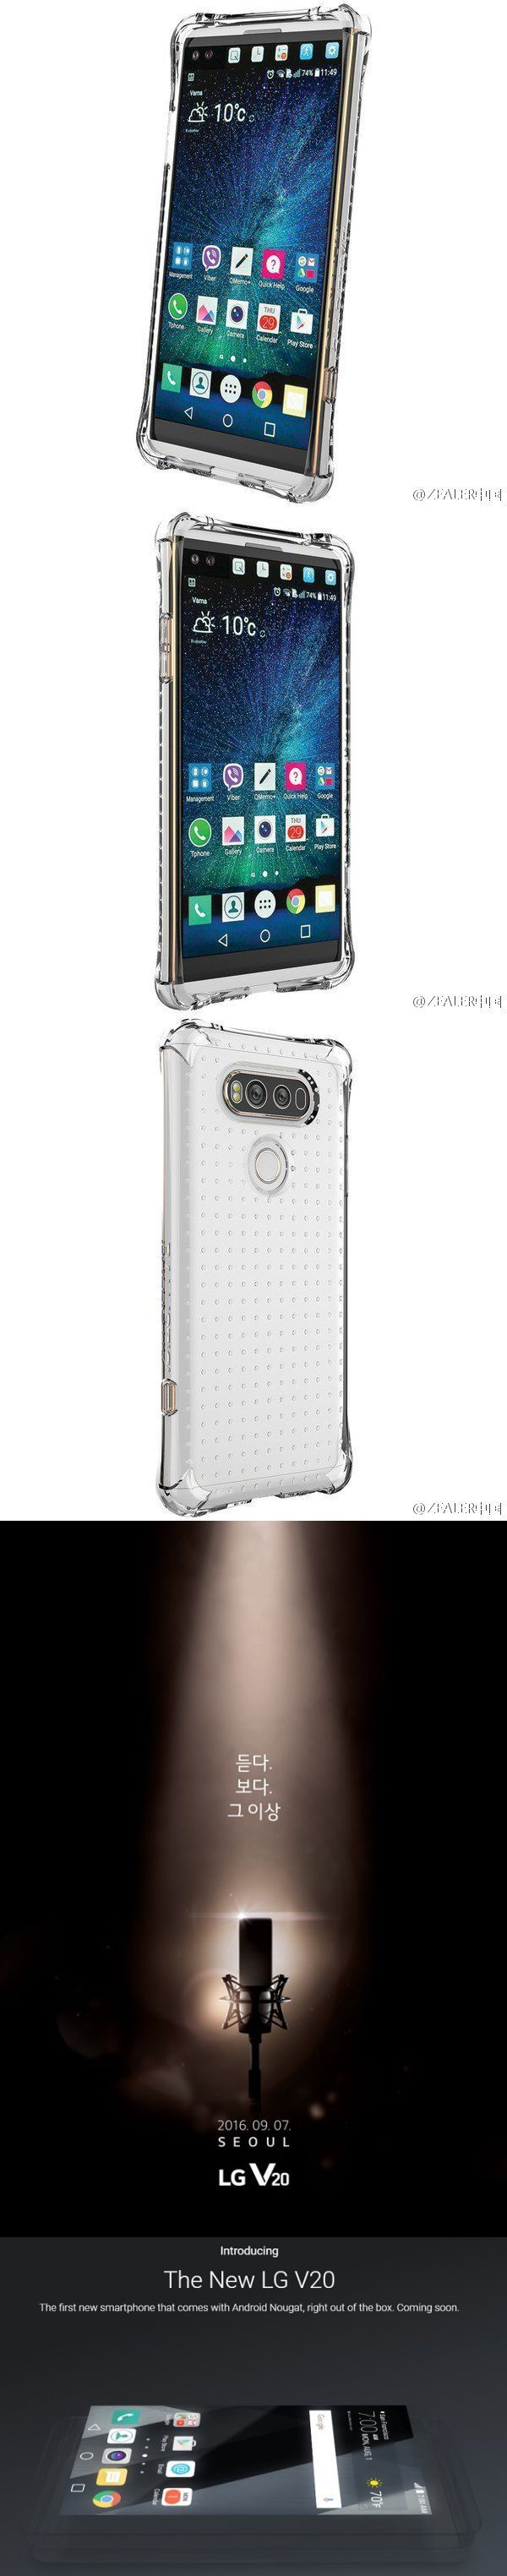 Így néz ki az LG V20, a két kijelzős telefon